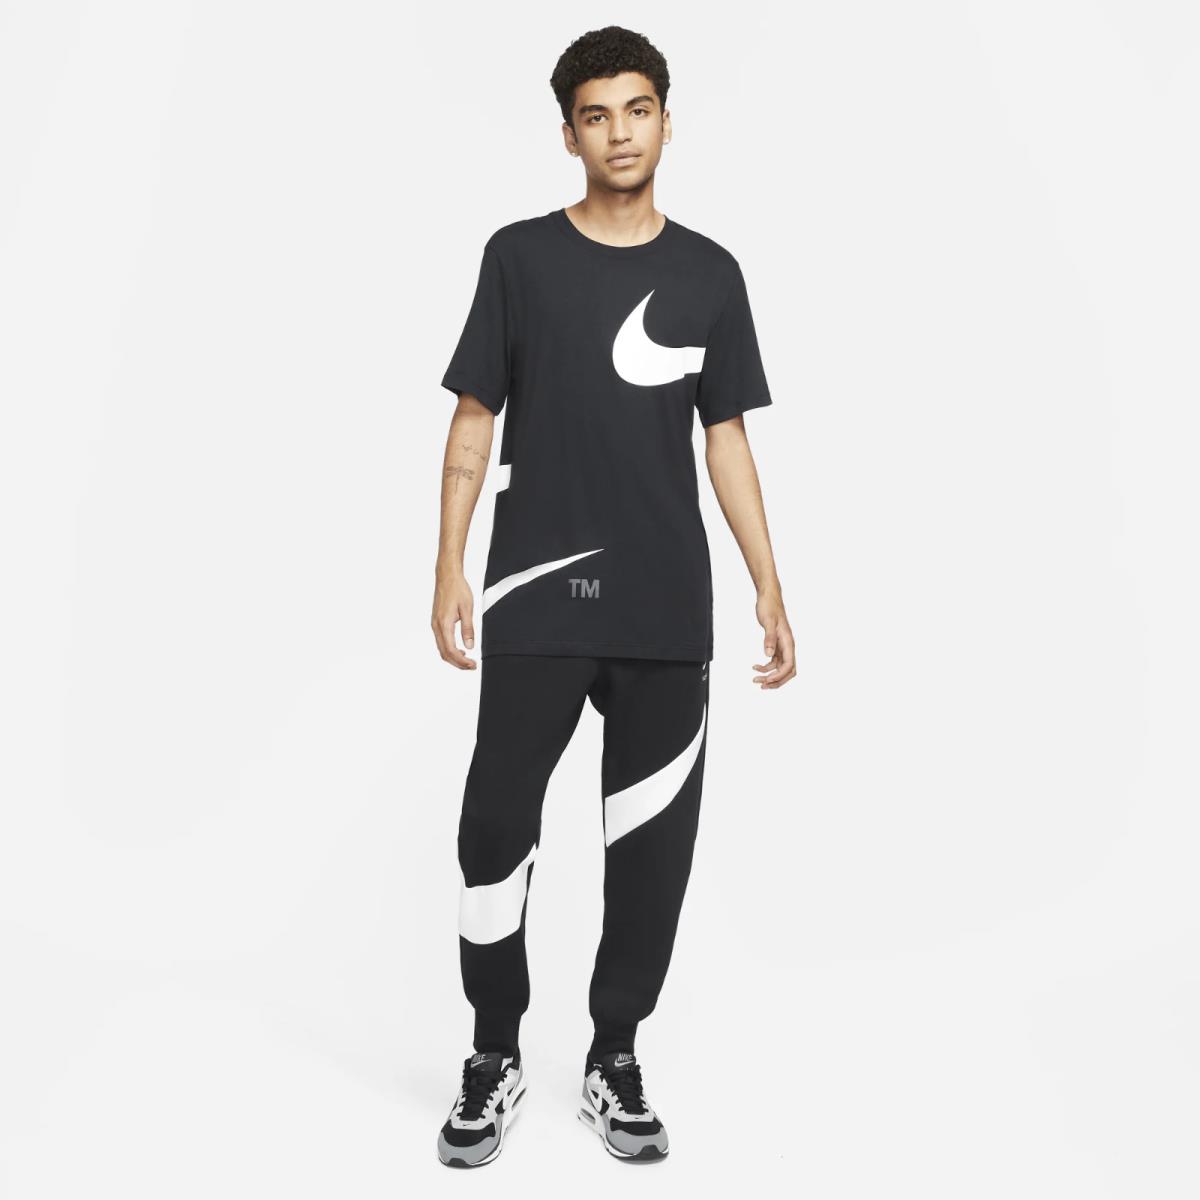 Nike clothing  - Black 4